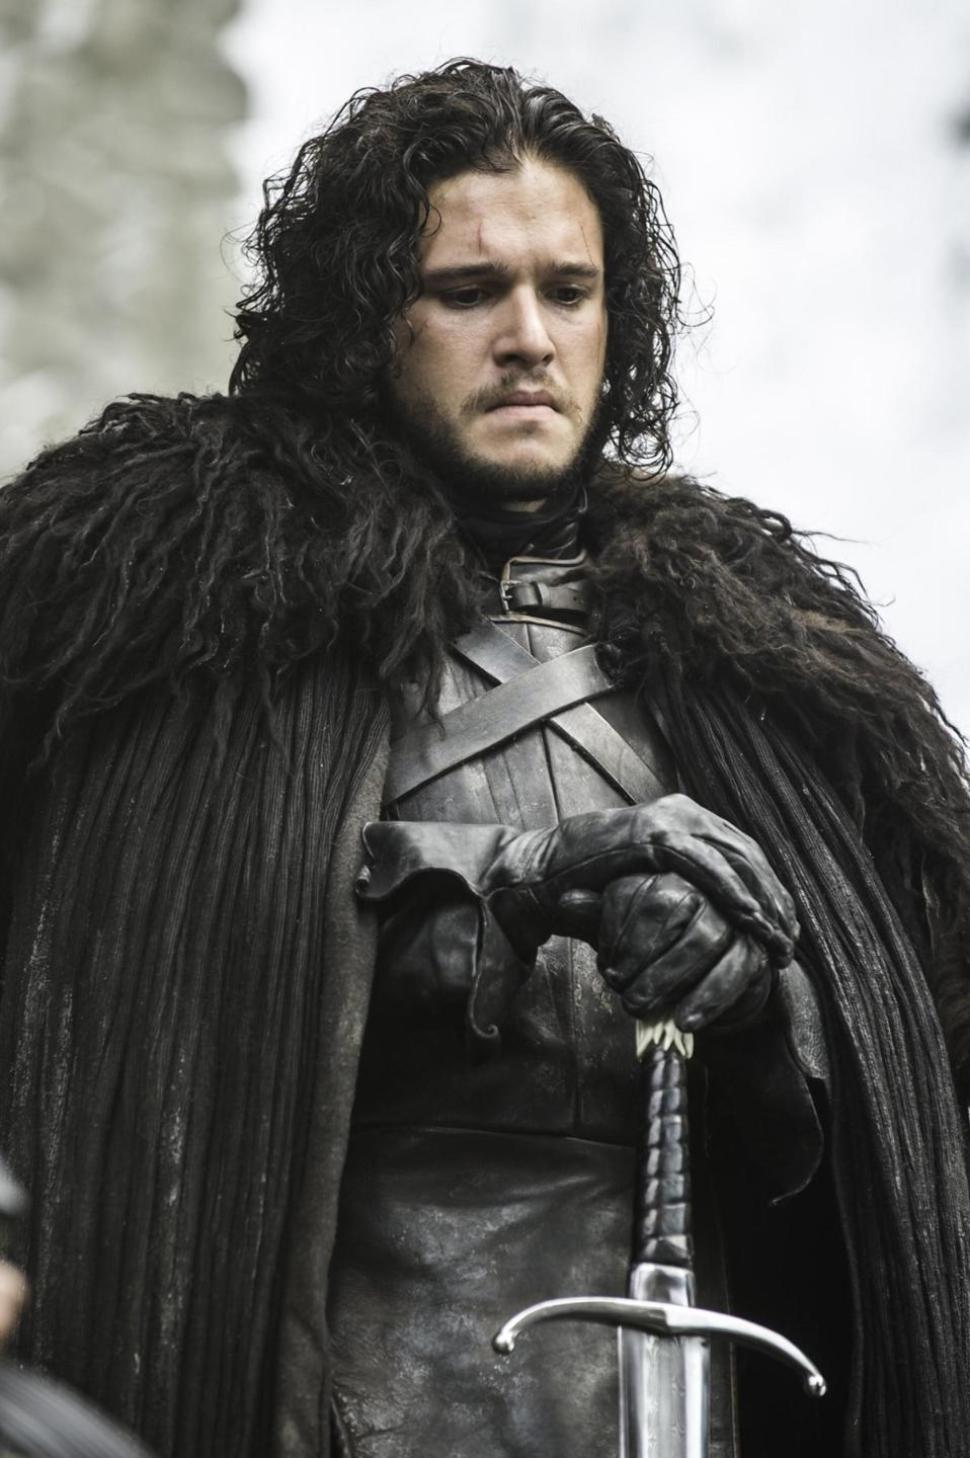 Jon Snow - Season 5 - game of thrones fotografia (38372630) - fanpop